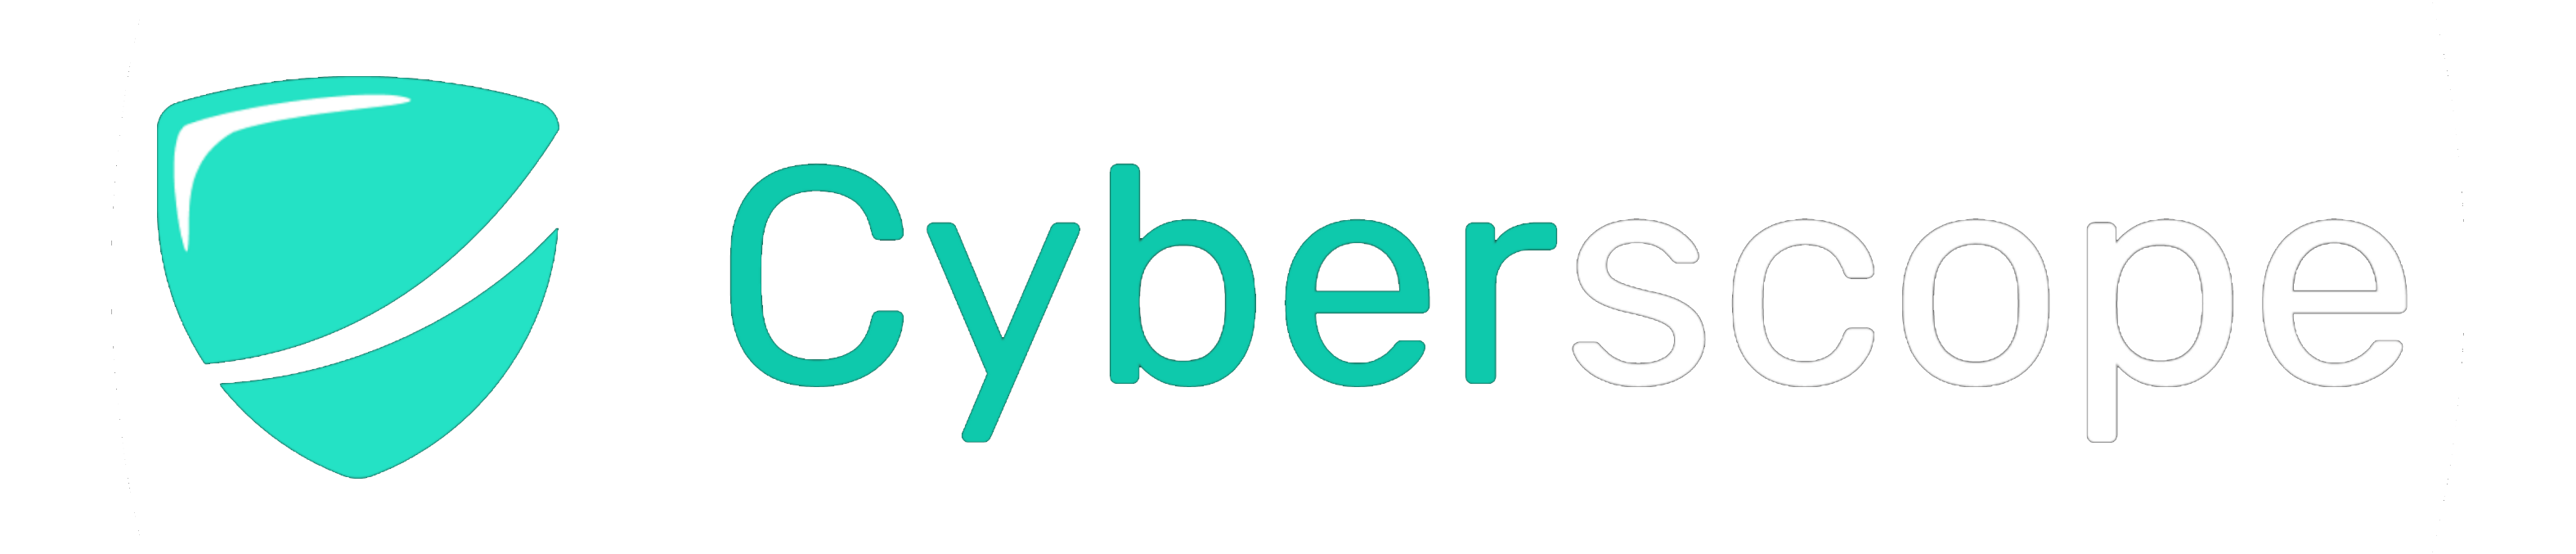 Cyberscope logo